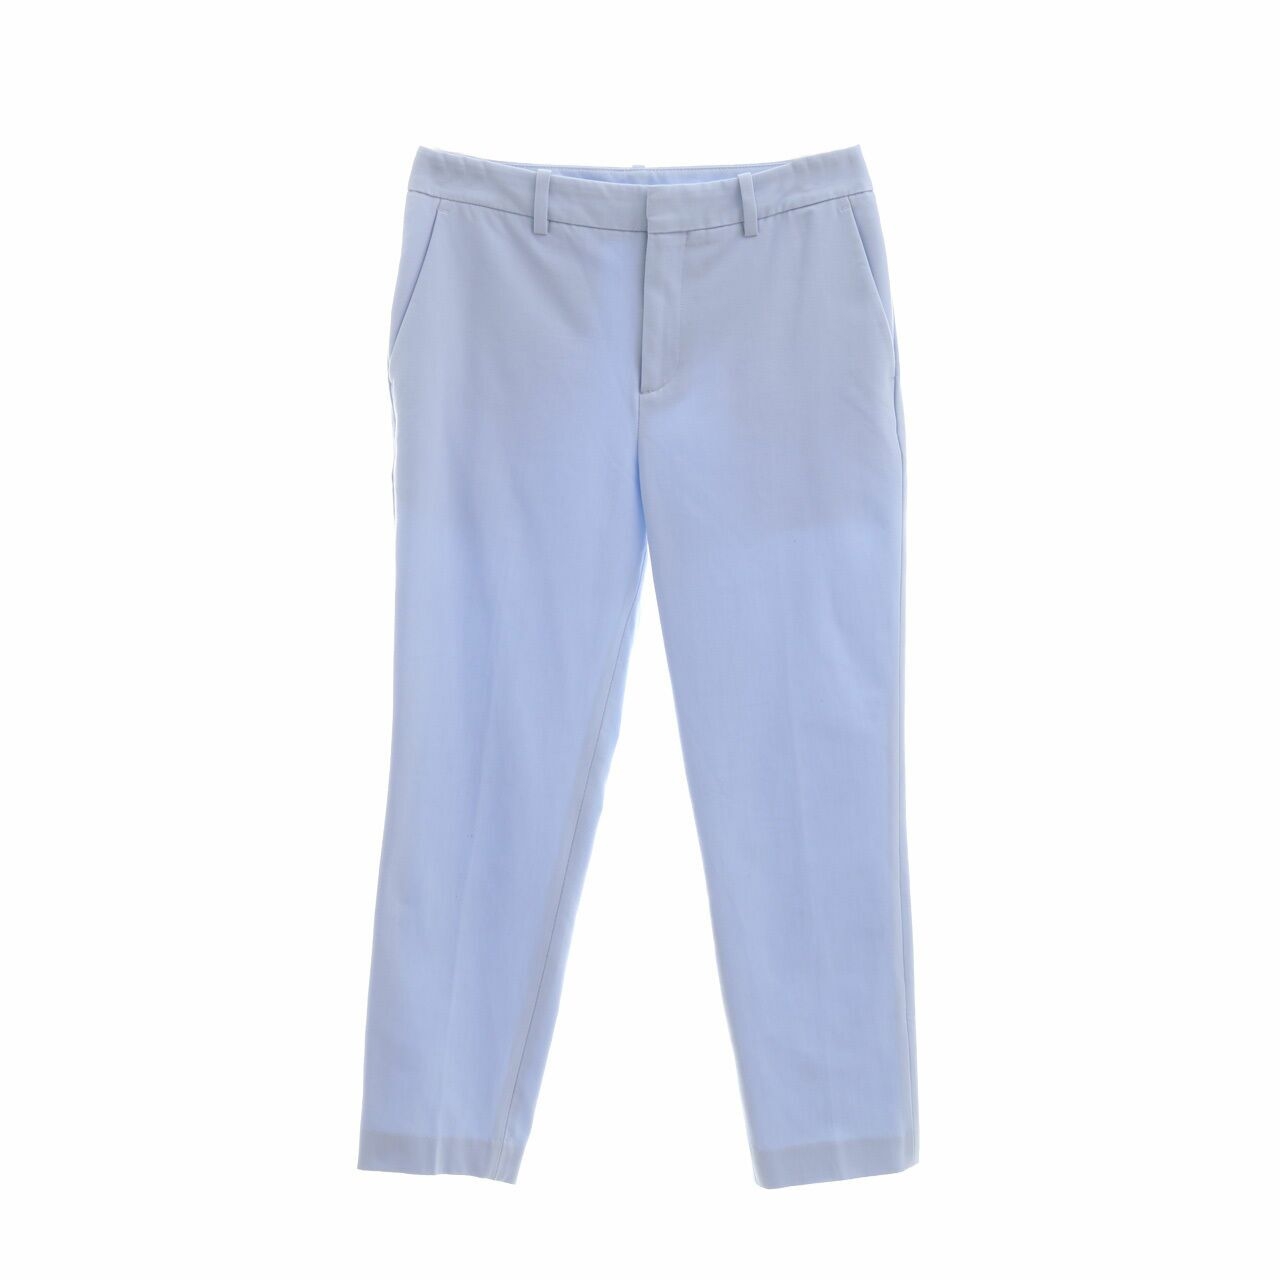 UNIQLO Light Blue Long Pants